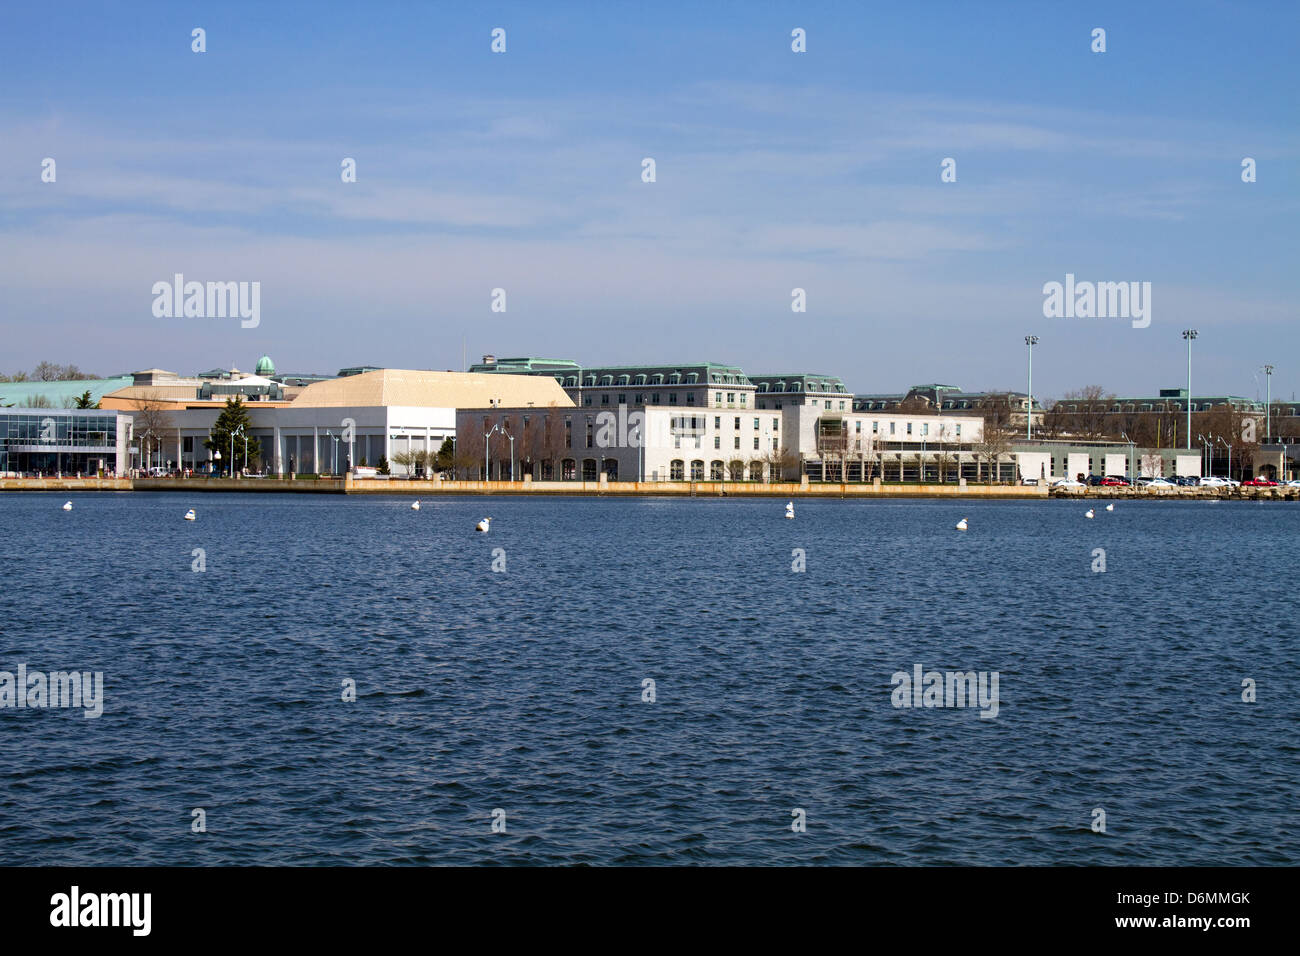 Skyline del campus dell'Accademia Navale degli Stati Uniti si trova in Annapolis, Maryland come viste attraverso il fiume Severn. Foto Stock